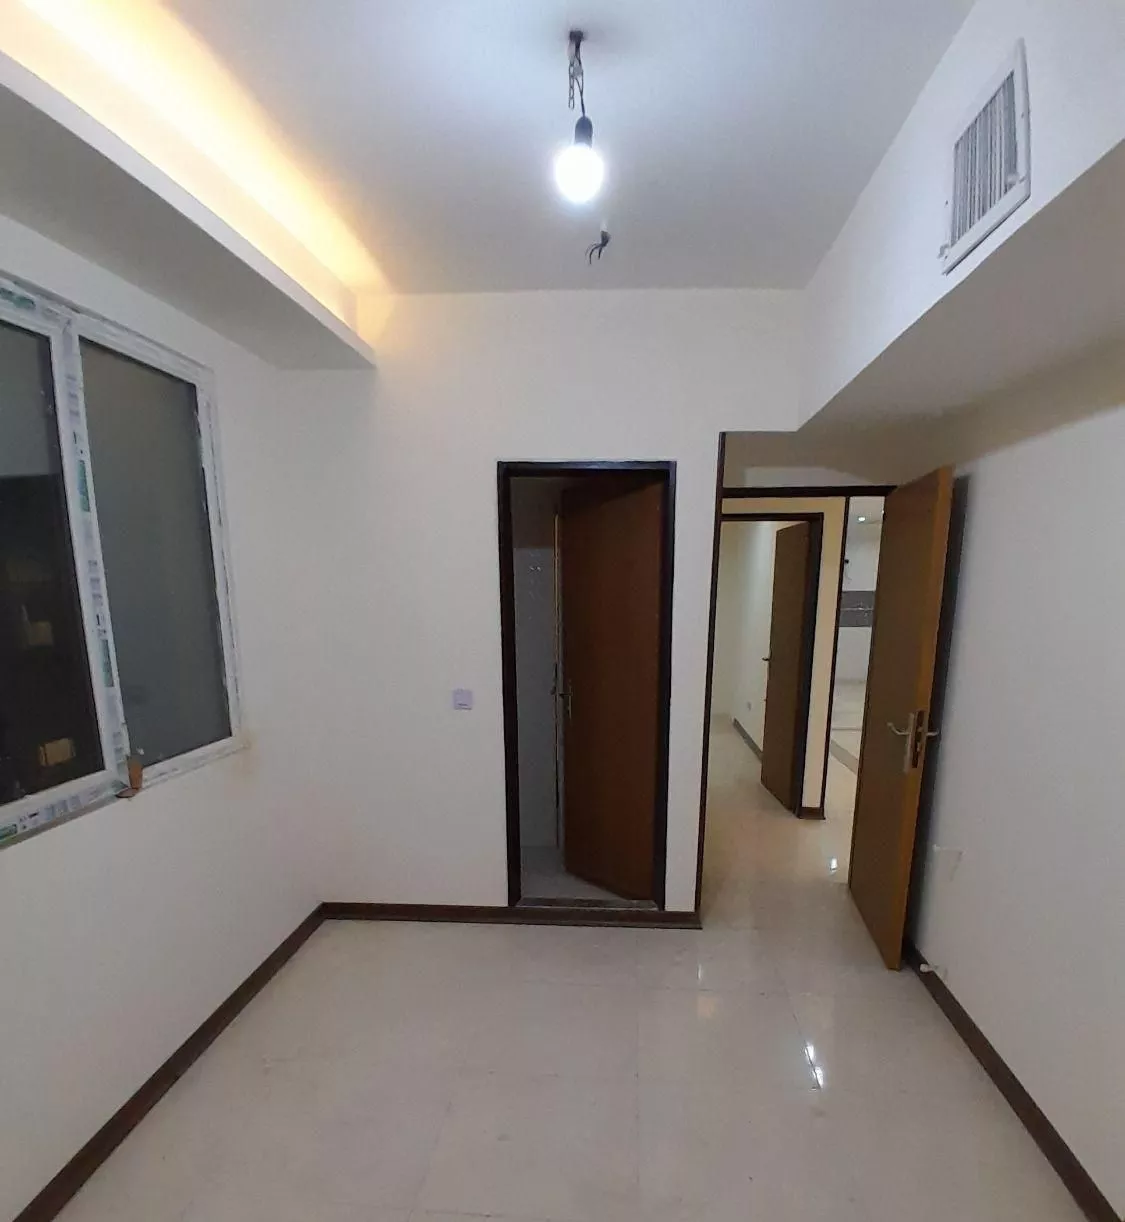 آپارتمان 175 متر در یاخچی آباد